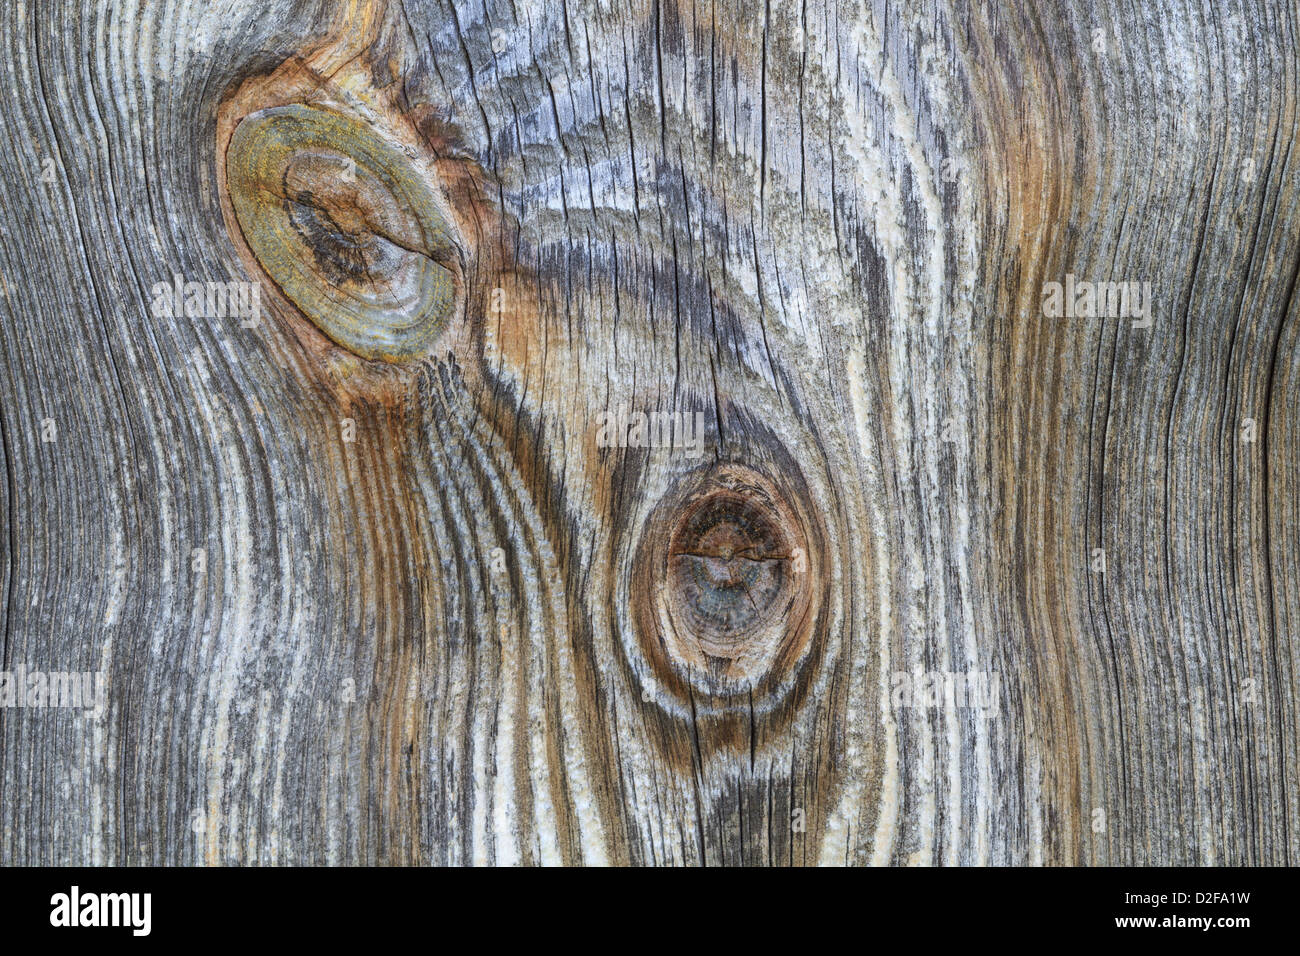 Closeup détail de planche en bois avec la direction générale de l'ancien nœud tronc Banque D'Images